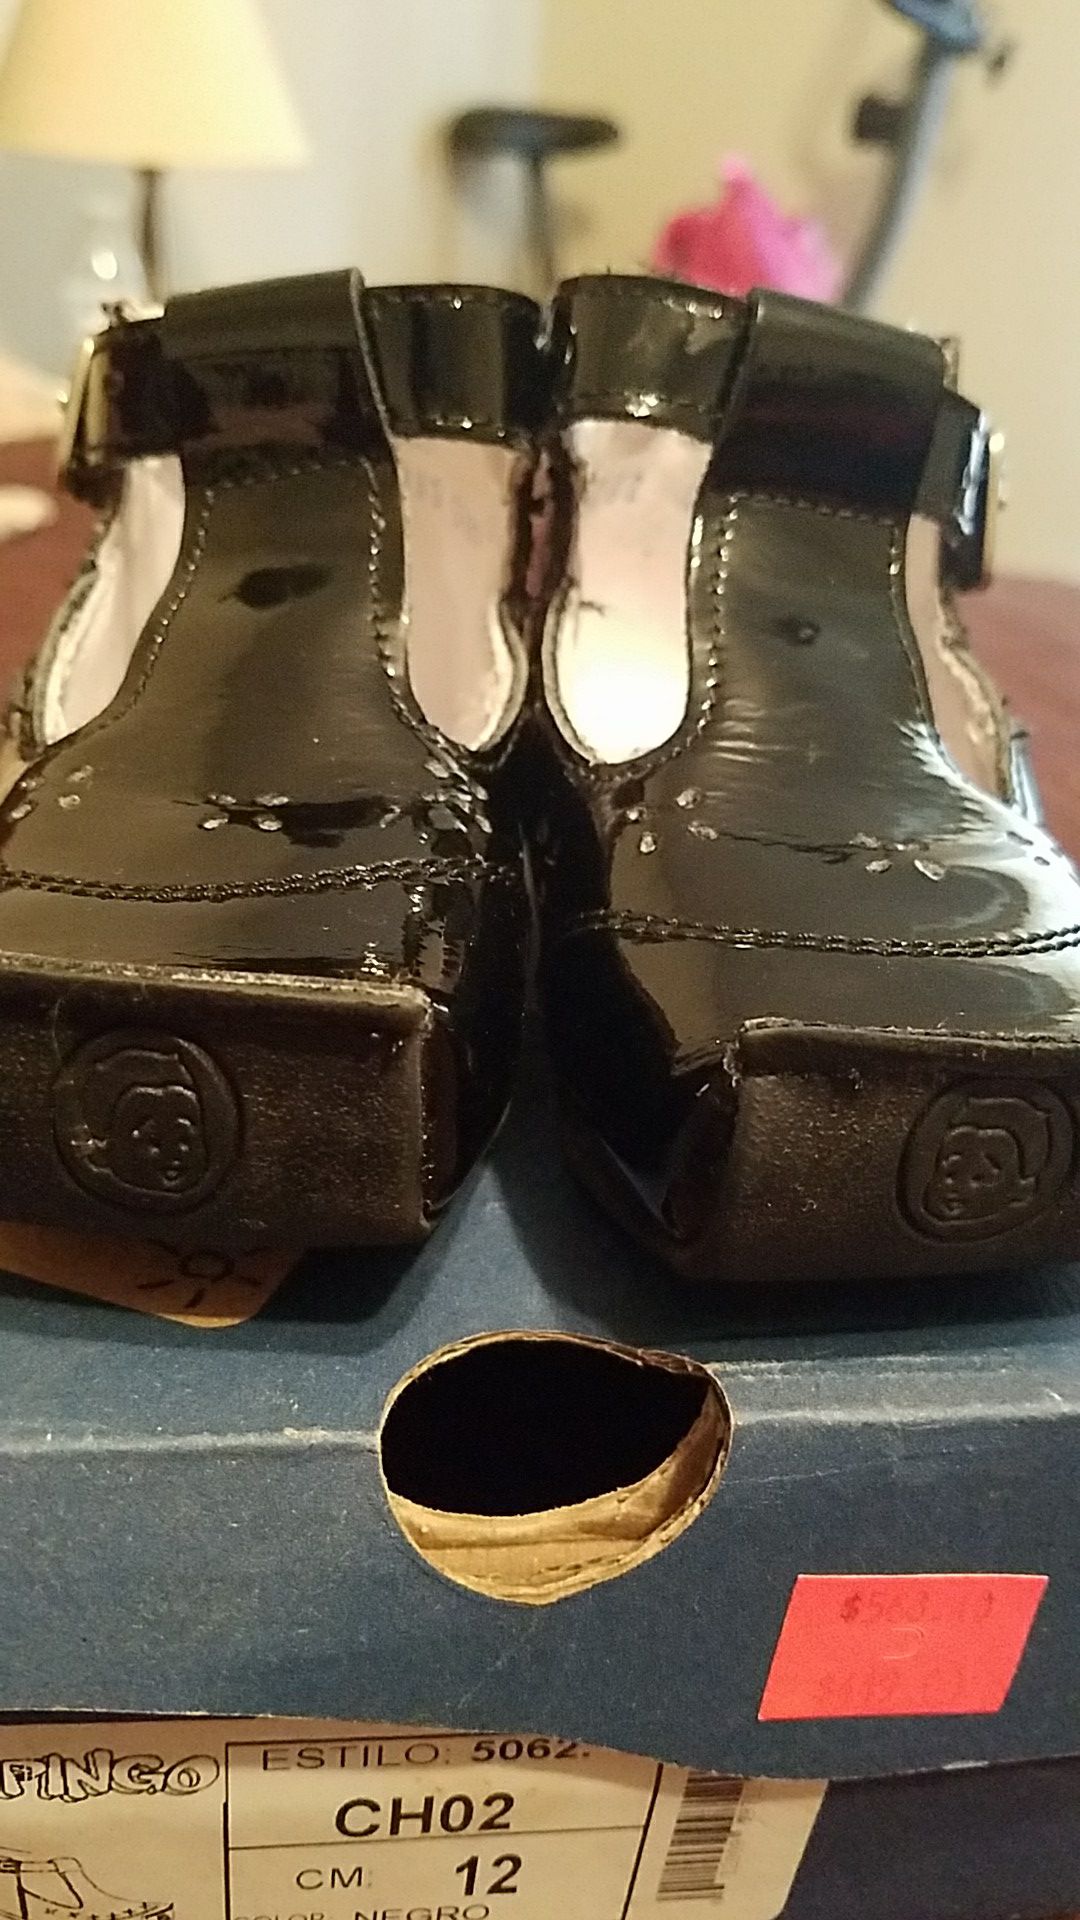 Zapatos PINGO especiales para niñas que estan aprendiendo a caminar Sale in TX - OfferUp